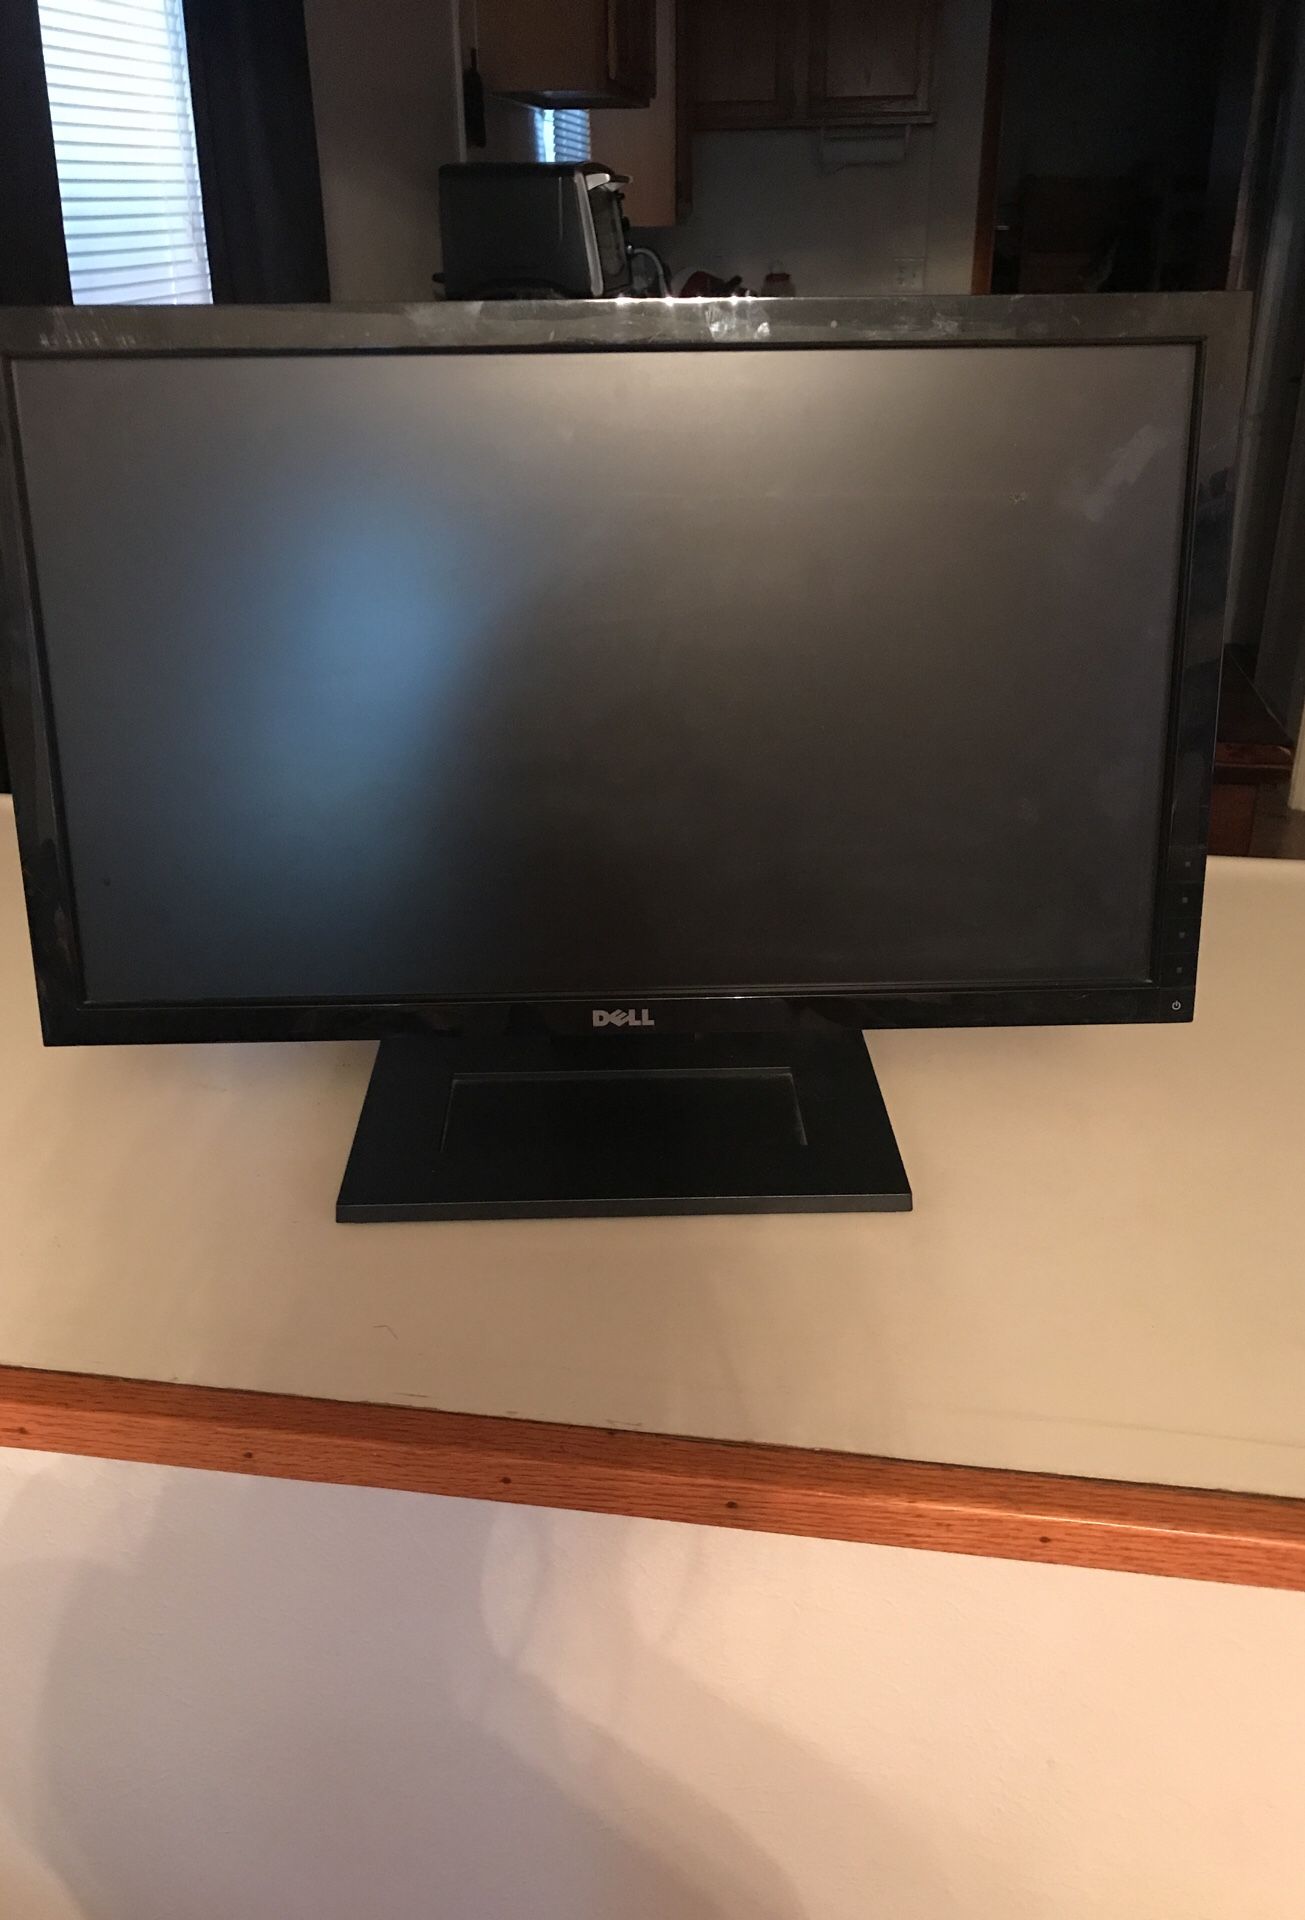 Computer monitor no HDM